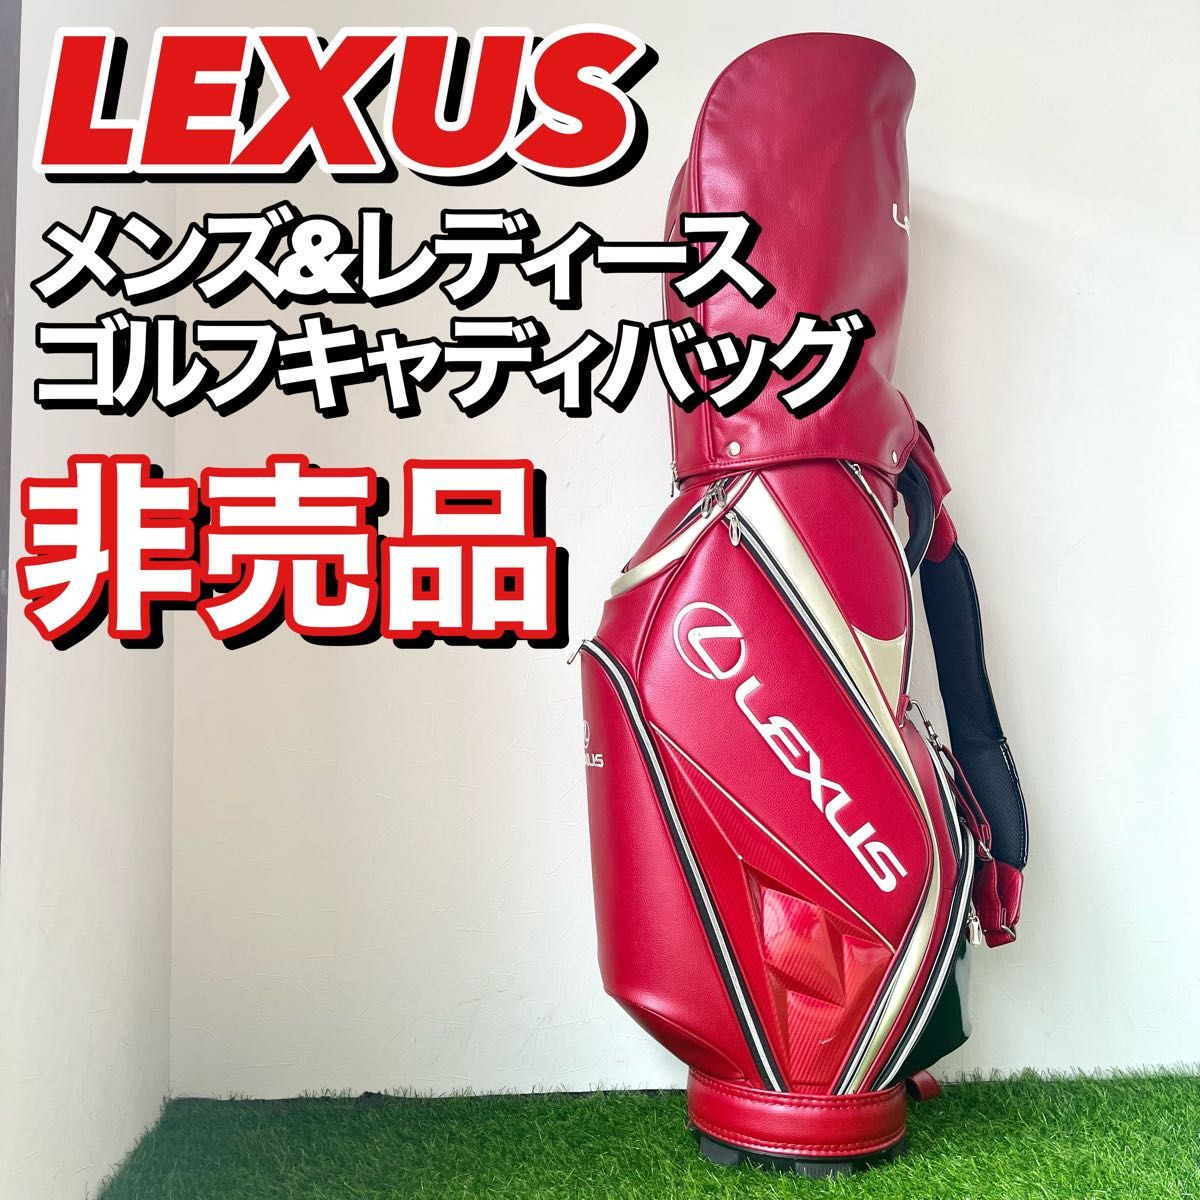 限定非売品 LEXUS レクサス キャディバッグ 赤 レッド 男女兼用 レザー調-